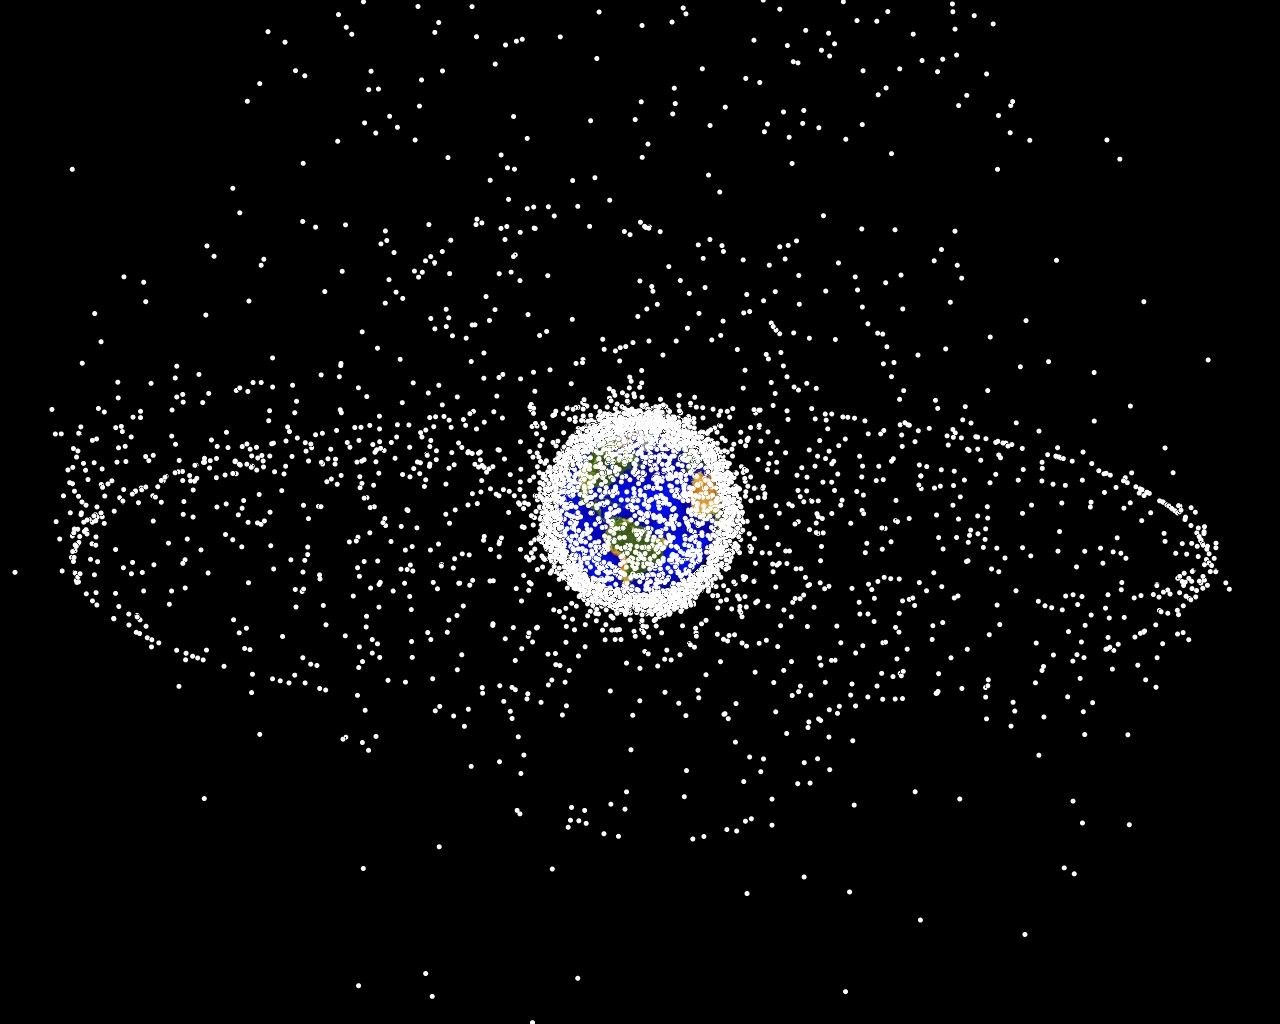 Компьютерная модель распределения космических объектов в околоземном пространстве, согласно описанию NASA 95 % из них являются мусором